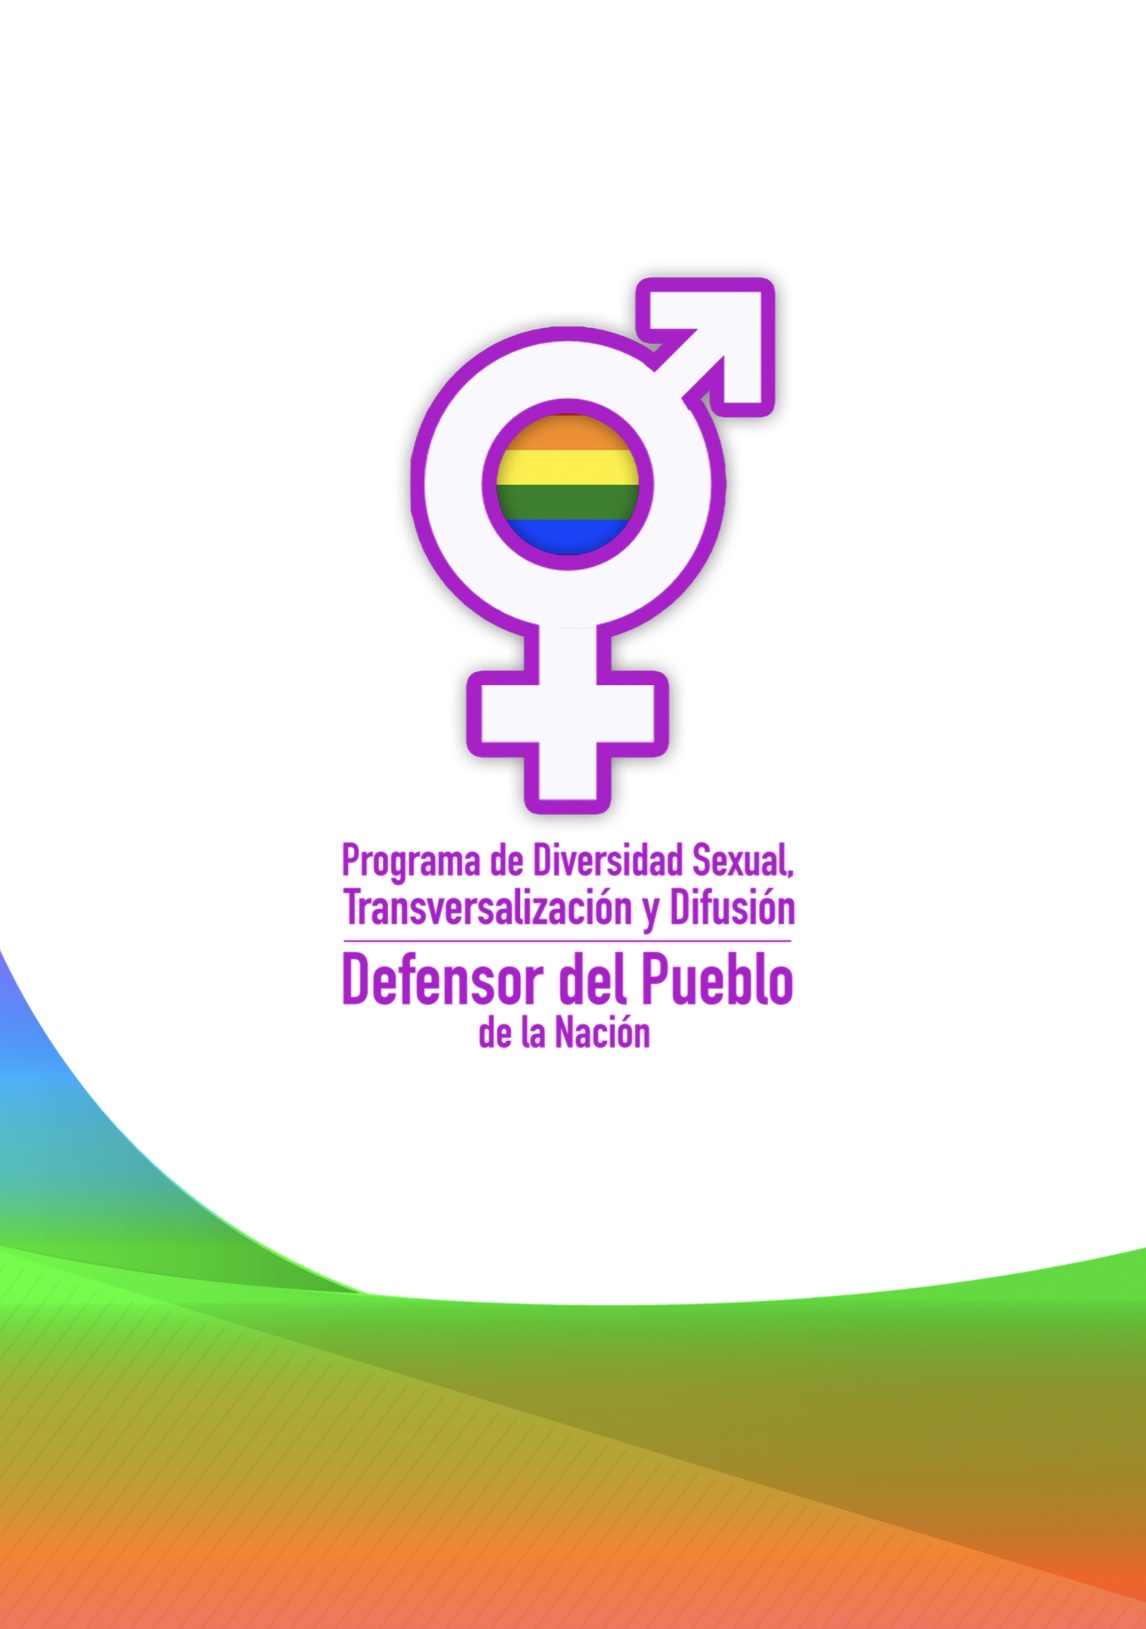 La Defensoría del Pueblo de la Nación creó el Programa de Diversidad Sexual, Transversalización y Difusión